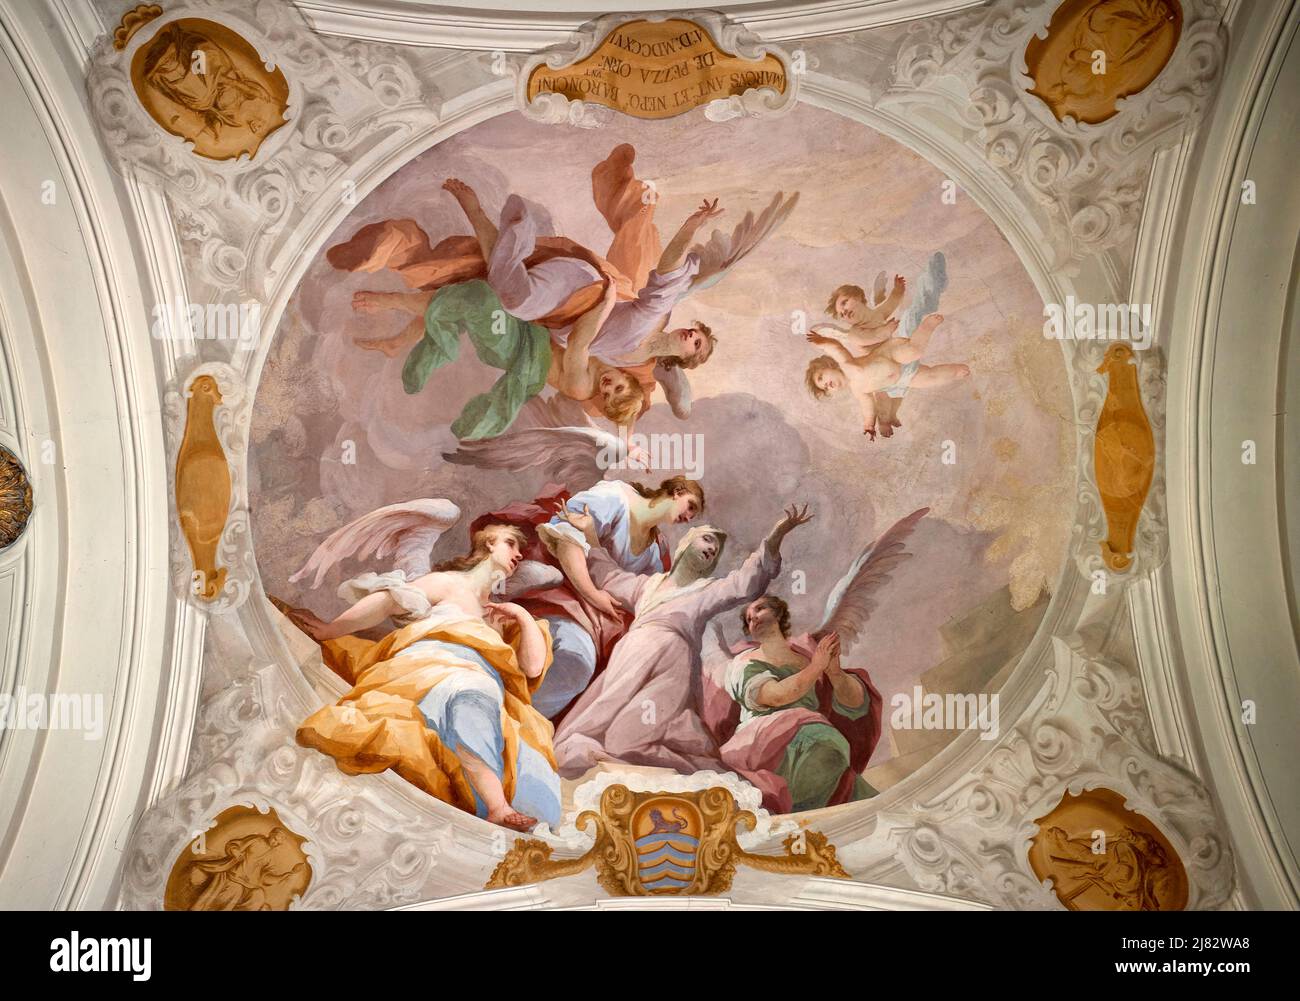 La morte di S. Verdiana   - affresco - Giovanni Camillo Sagrestani  - 1716 - Castelfiorentino (Fi),Italia, Santuario di S. Verdiana Stock Photo